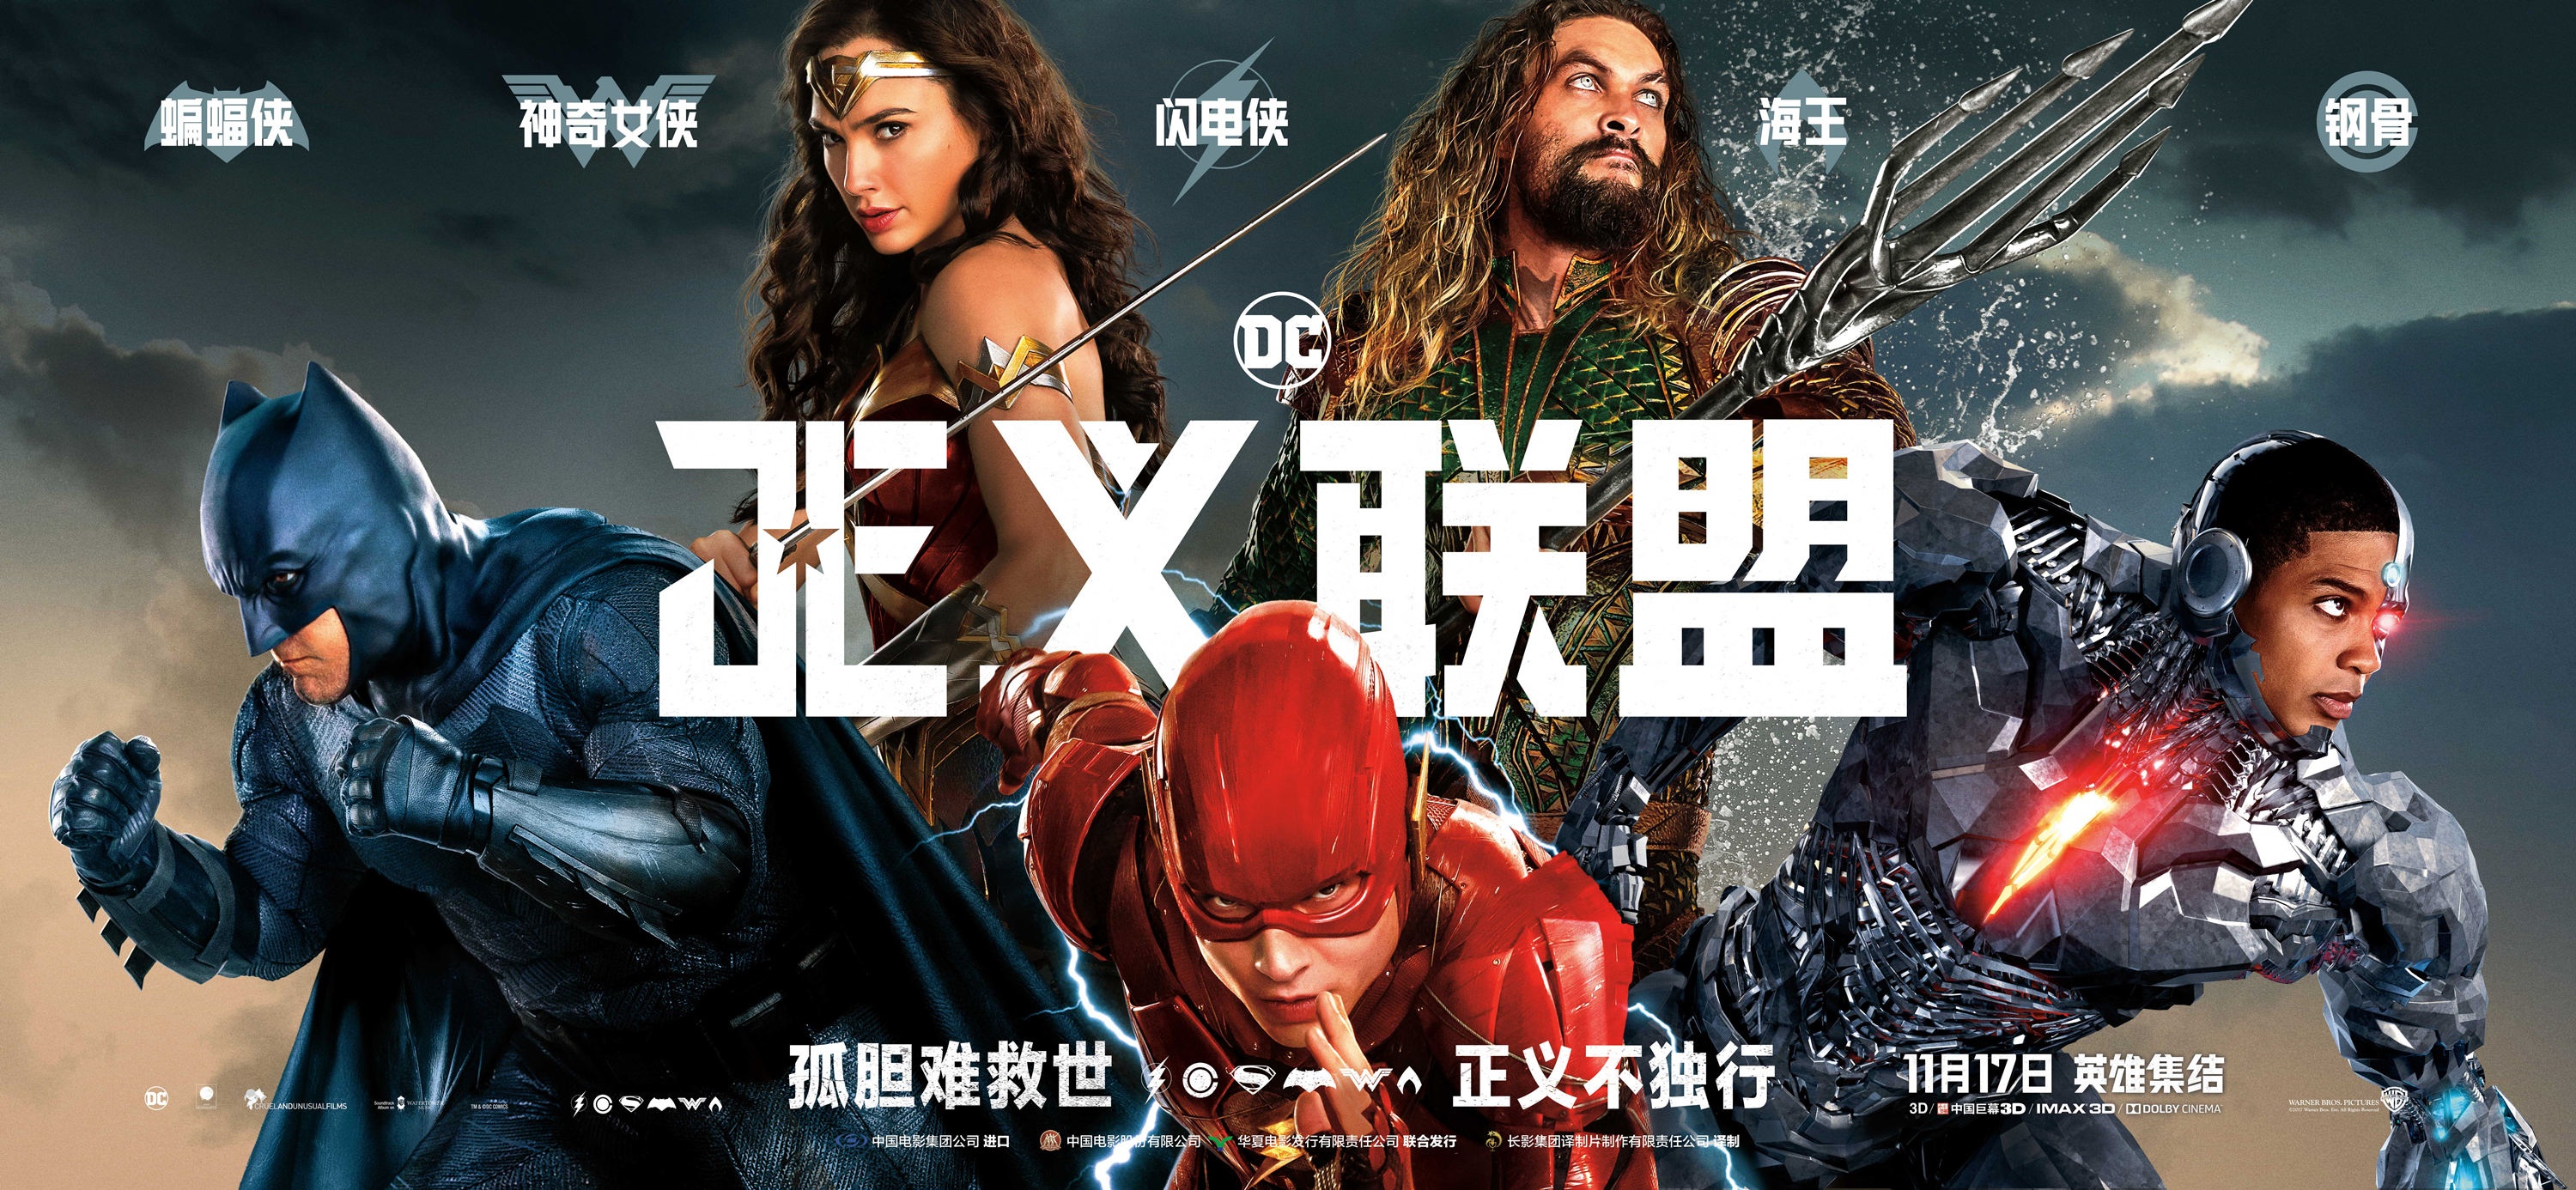 DC、漫威的中国电影票房之争 谁会成为最大赢家？